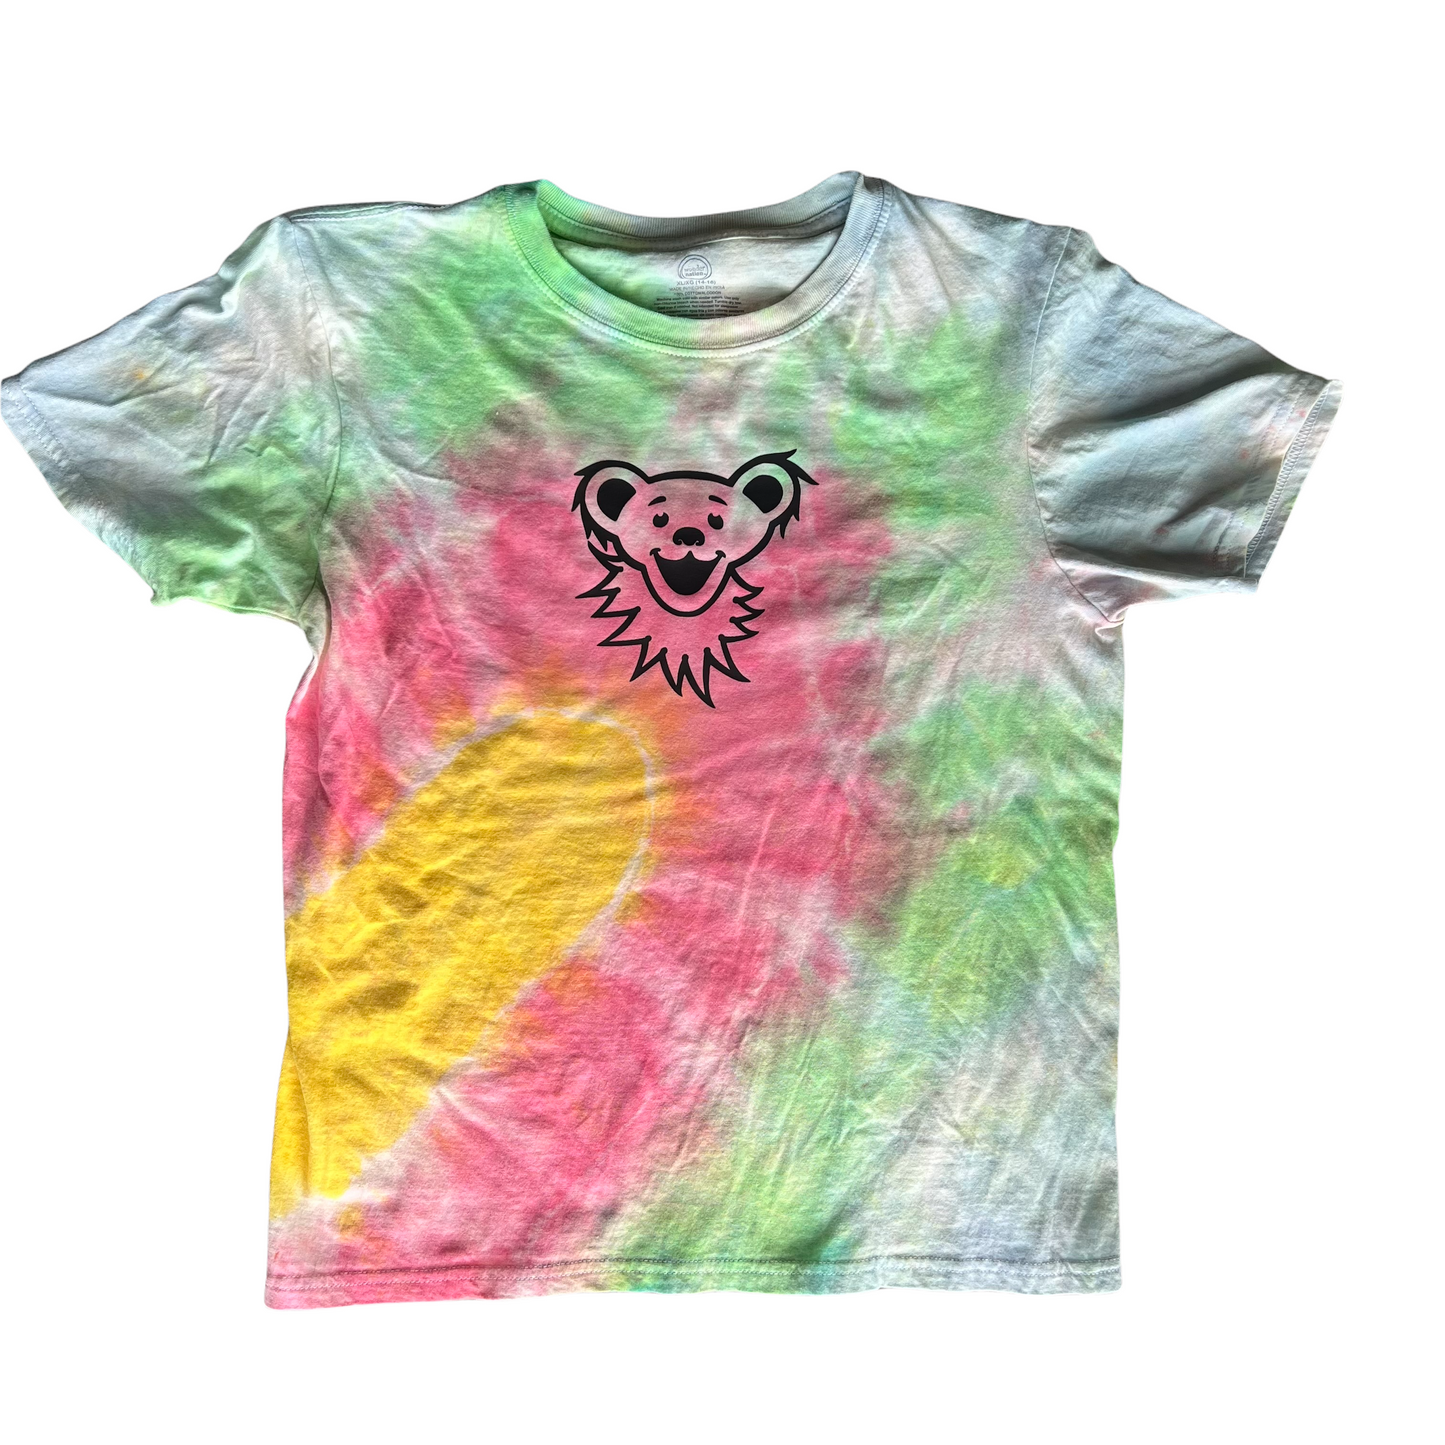 XL size 14/16 kids dye shirt - bear